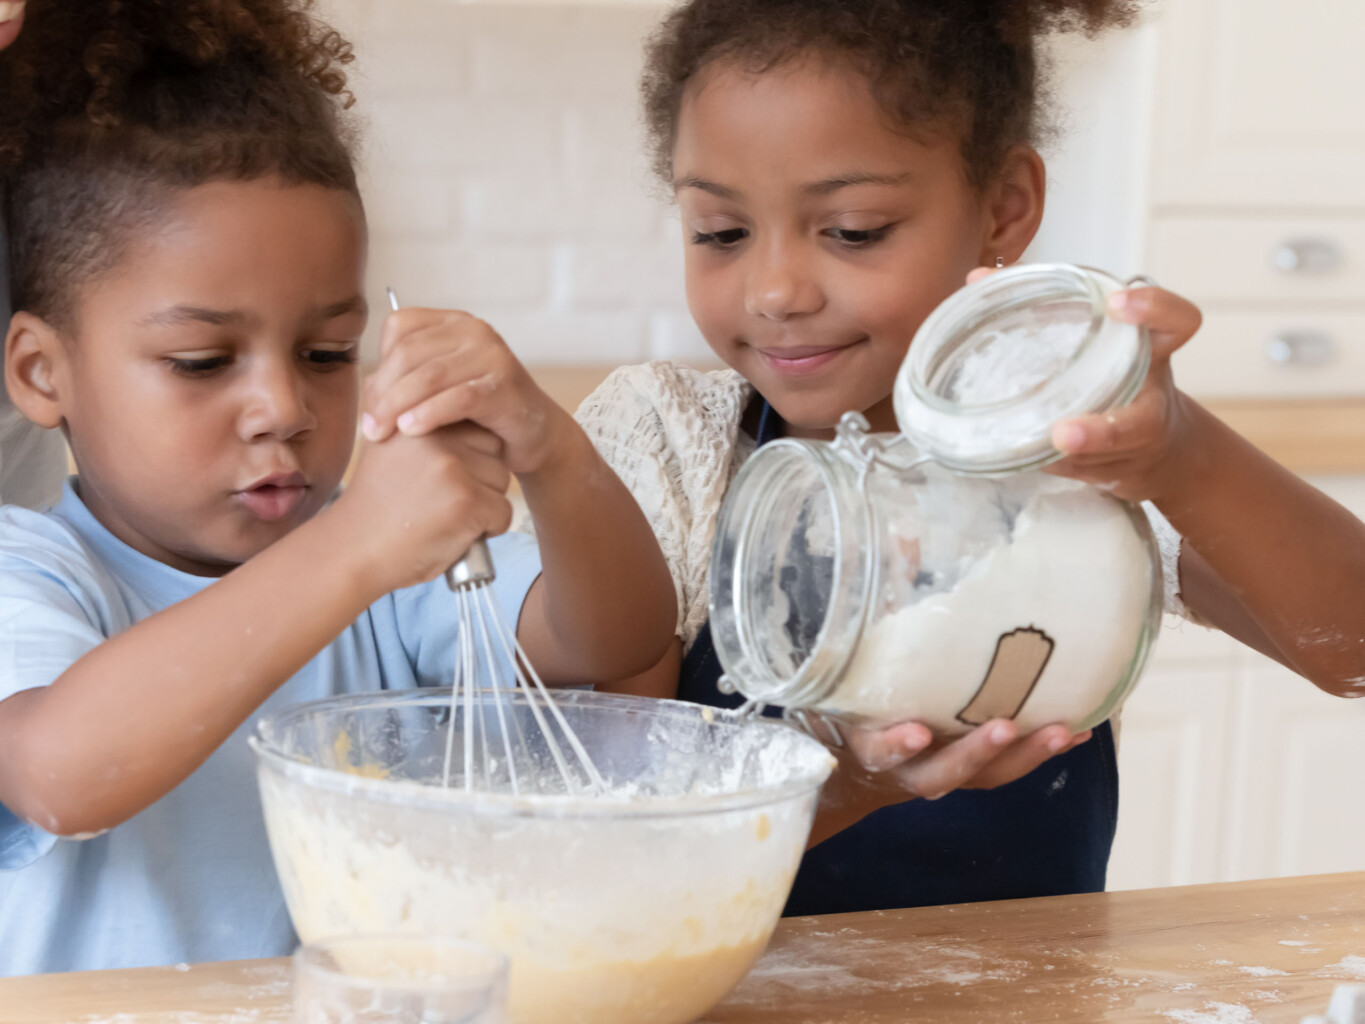 Two children baking.